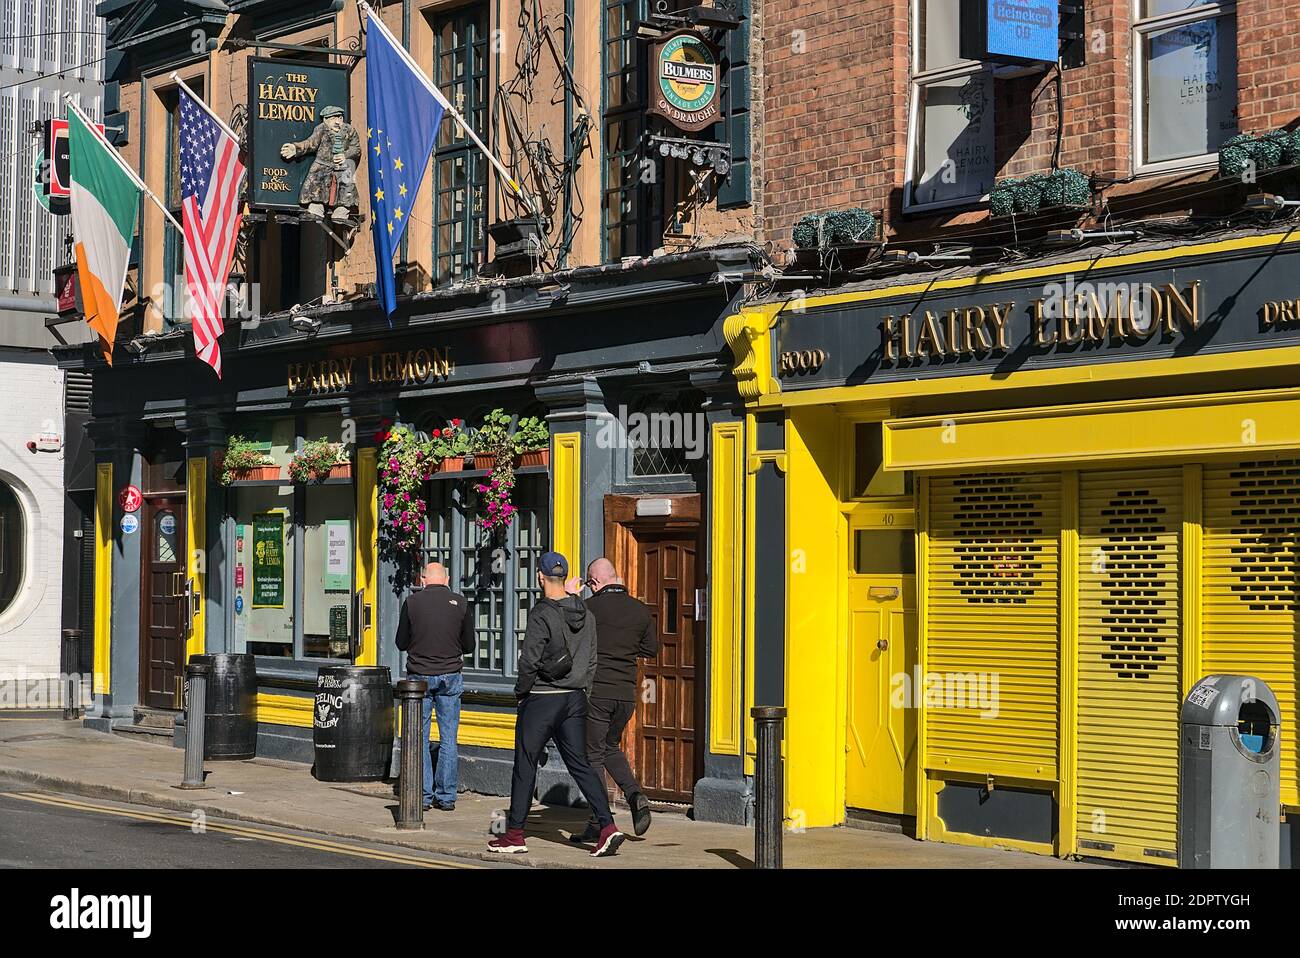 Dublin, Irland - 27. September 2020: Zufällige Leute, die an einem sonnigen Tag auf der Straße durch den Hairy Lemon Food and Drink Pub gehen. EU, USA und irische Flagge Stockfoto